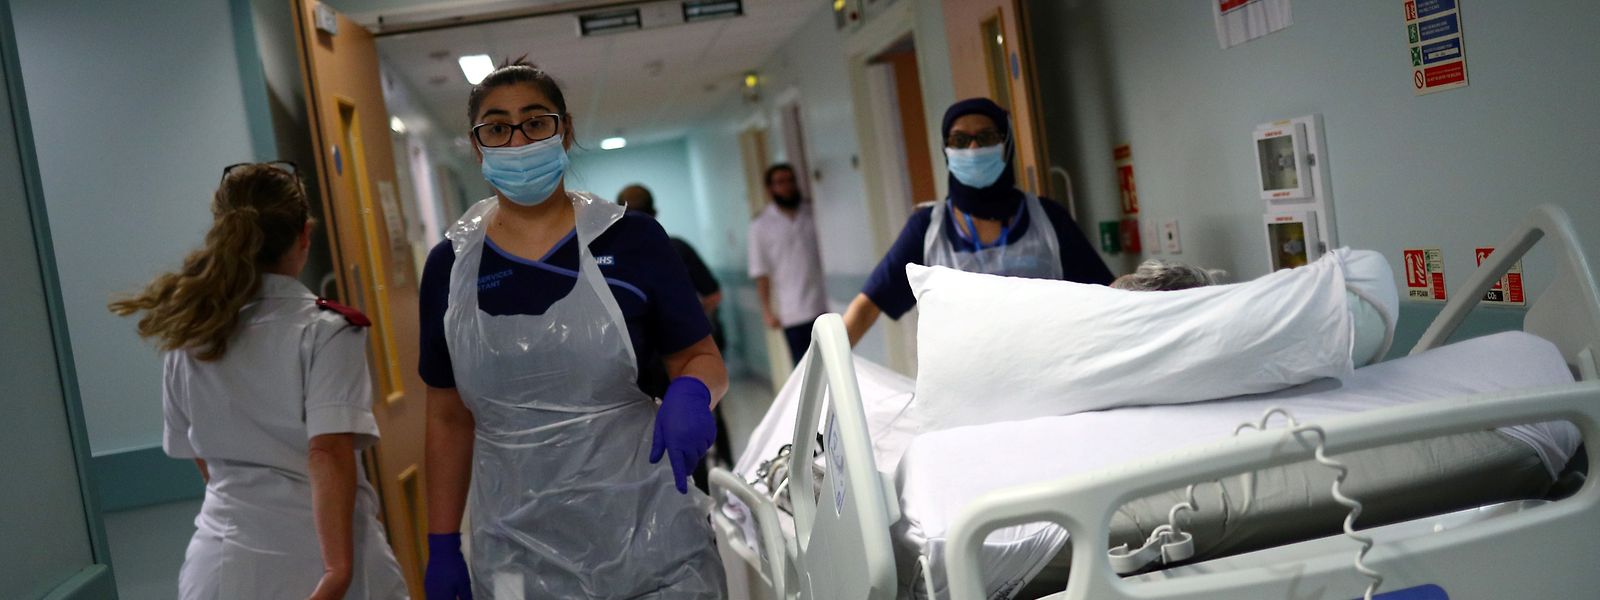 Großbritannien, Blackburn: Medizinische Mitarbeiter des Royal Blackburn Lehrkrankenhauses in Schutzkleidung schieben einen Patienten auf einem Krankenhausbett durch einen Korridor.